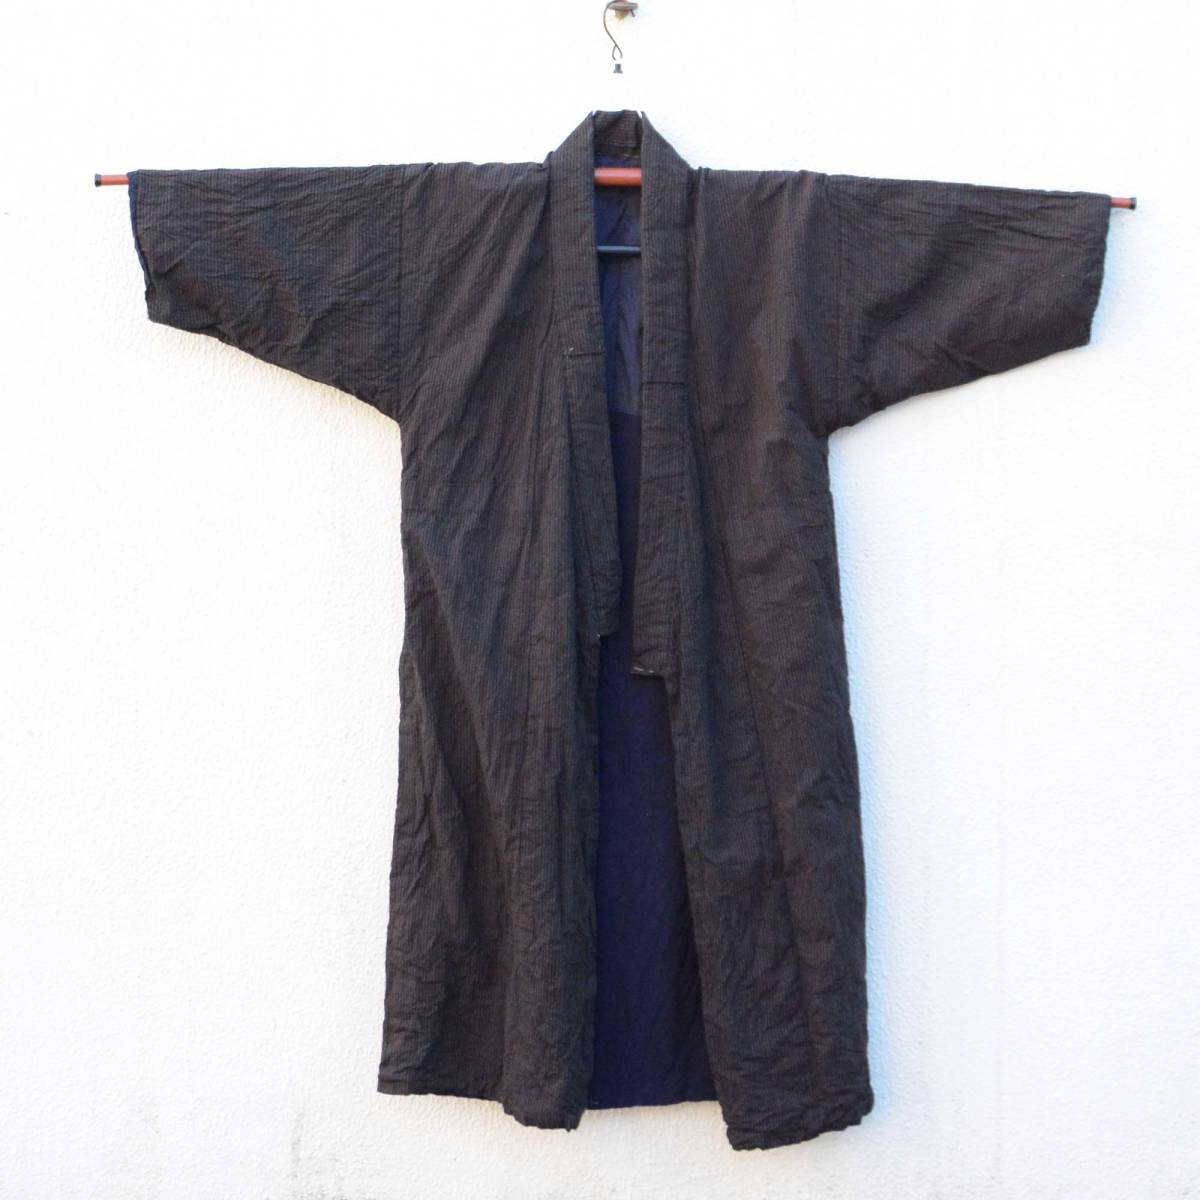 ジャパンヴィンテージ 着物 クレイジーパターン 木綿 縞模様 長着 大正 昭和 長着 Kimono Vintage Robe Crazy Pattern Cotton Stripe Japan_画像3